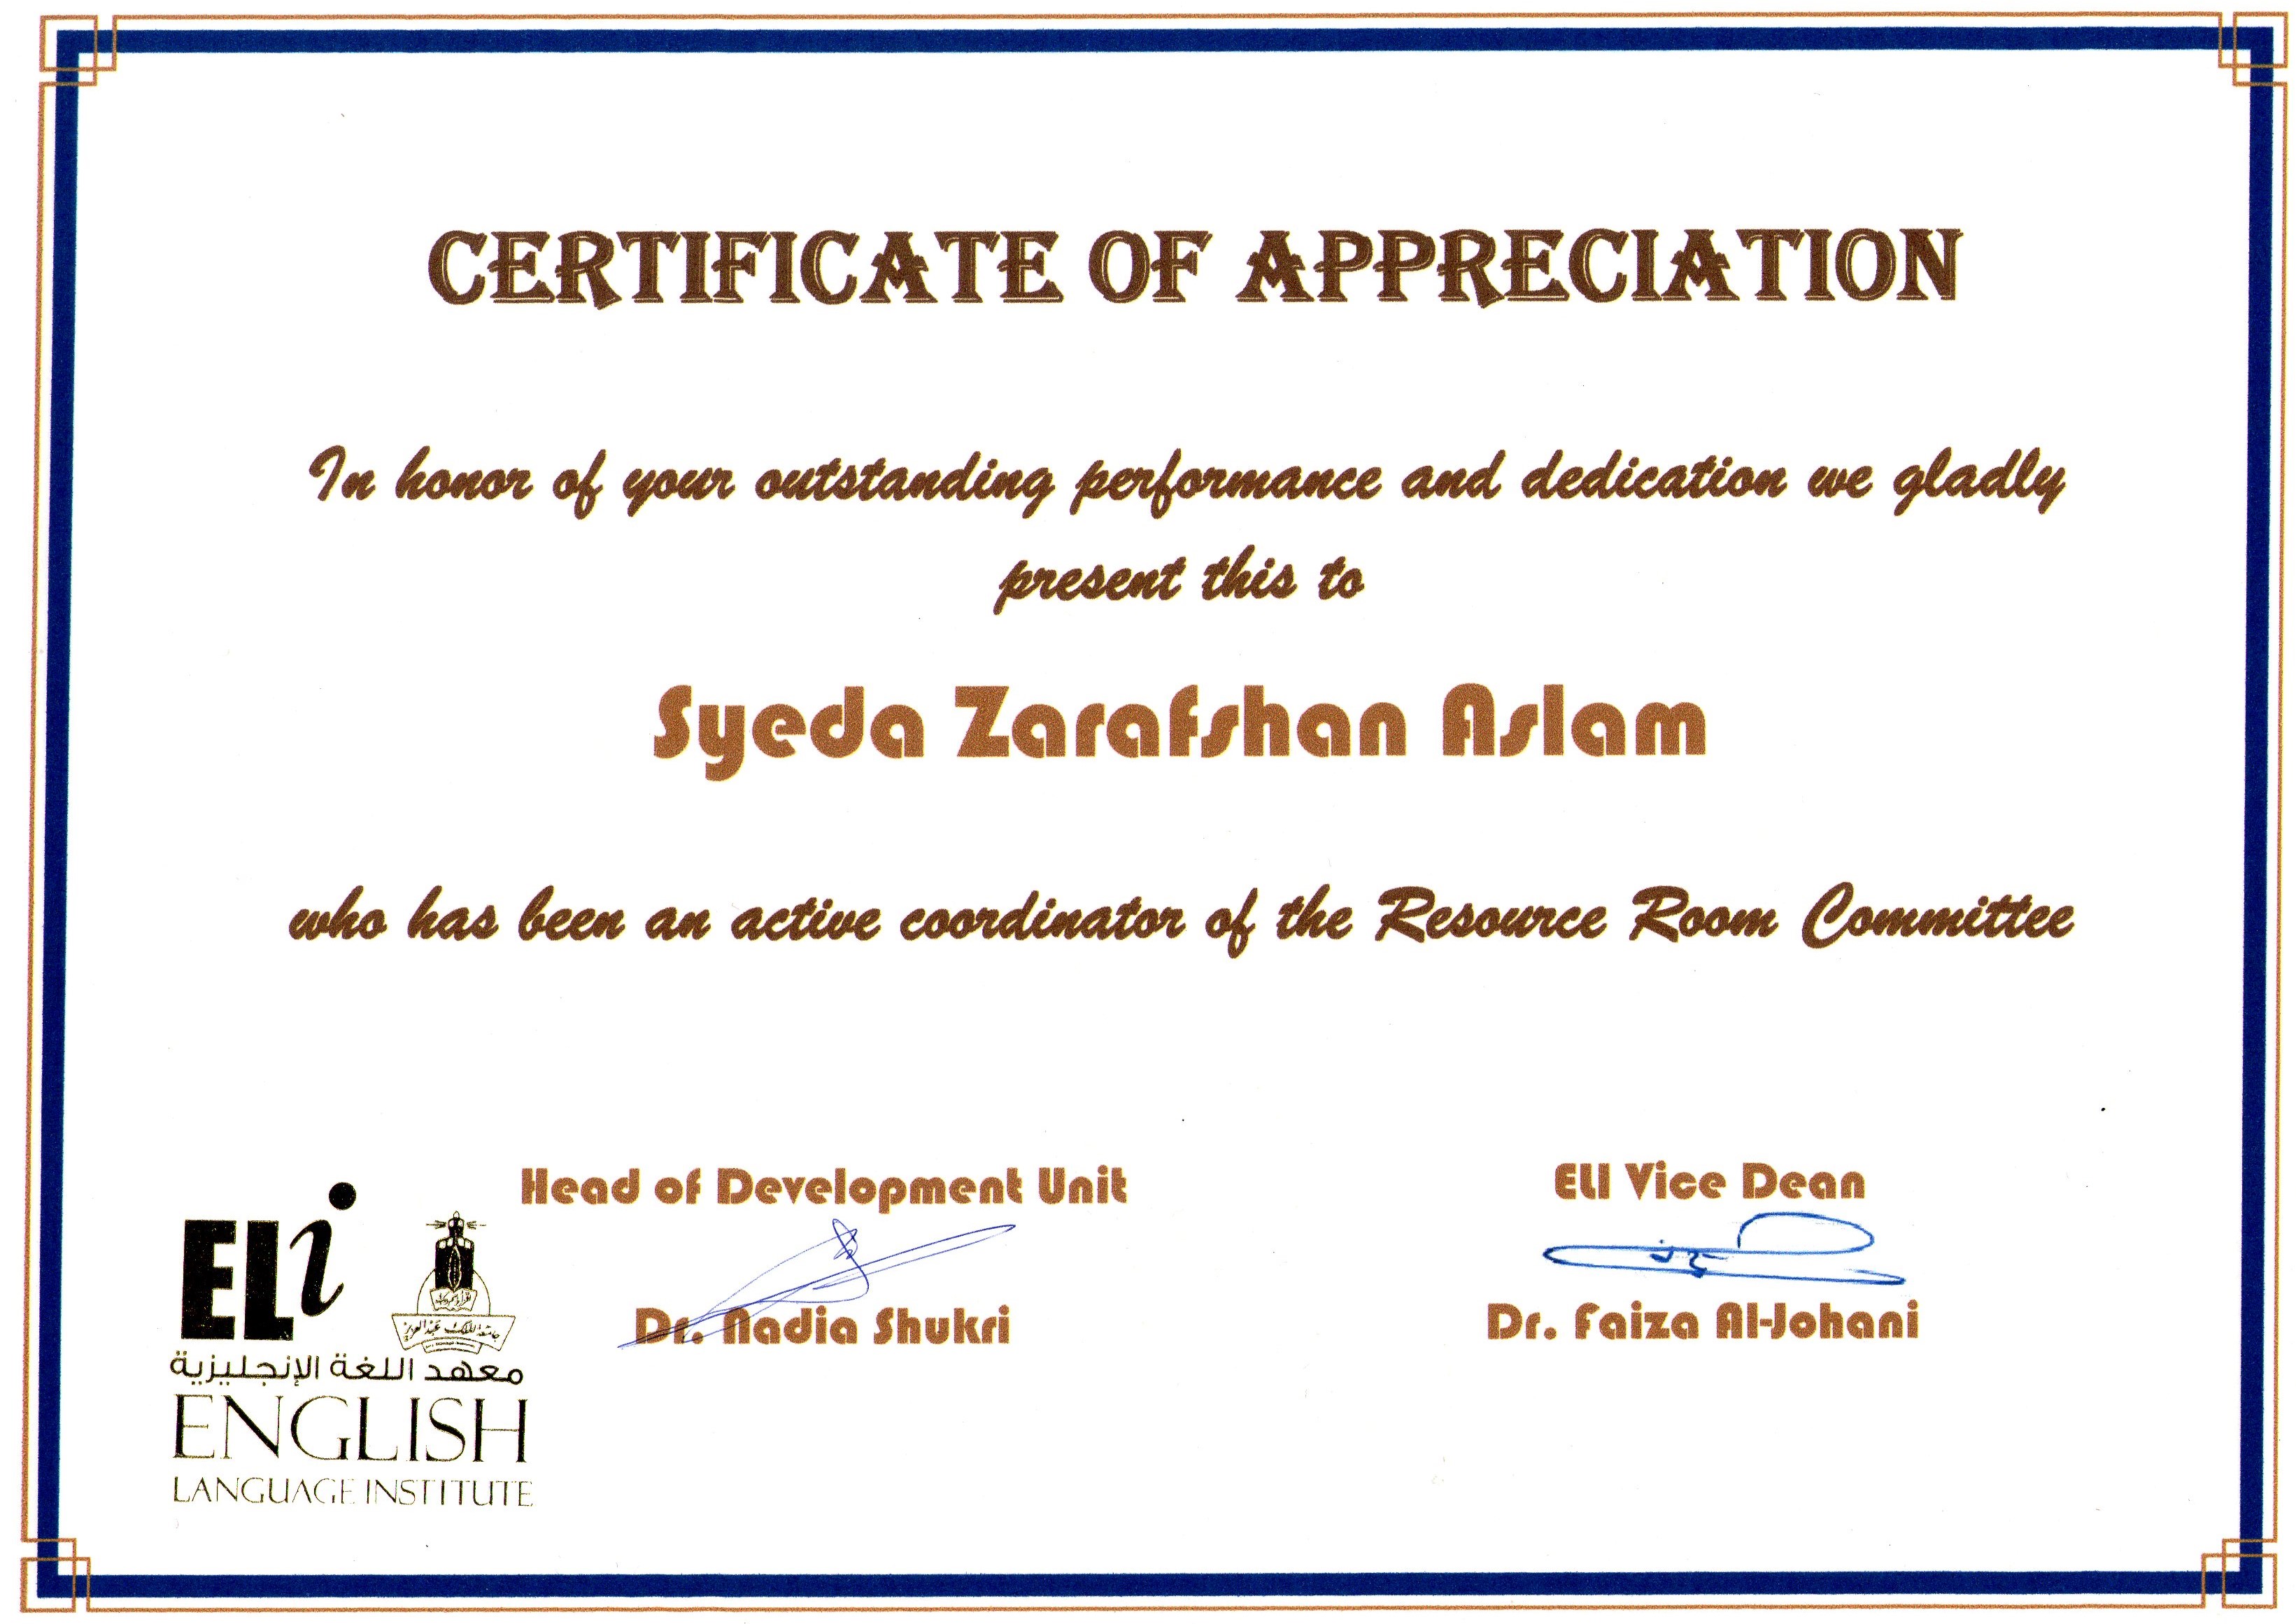 سيدة زرفشان اسلم | Photo Album | certificates of Appreciation